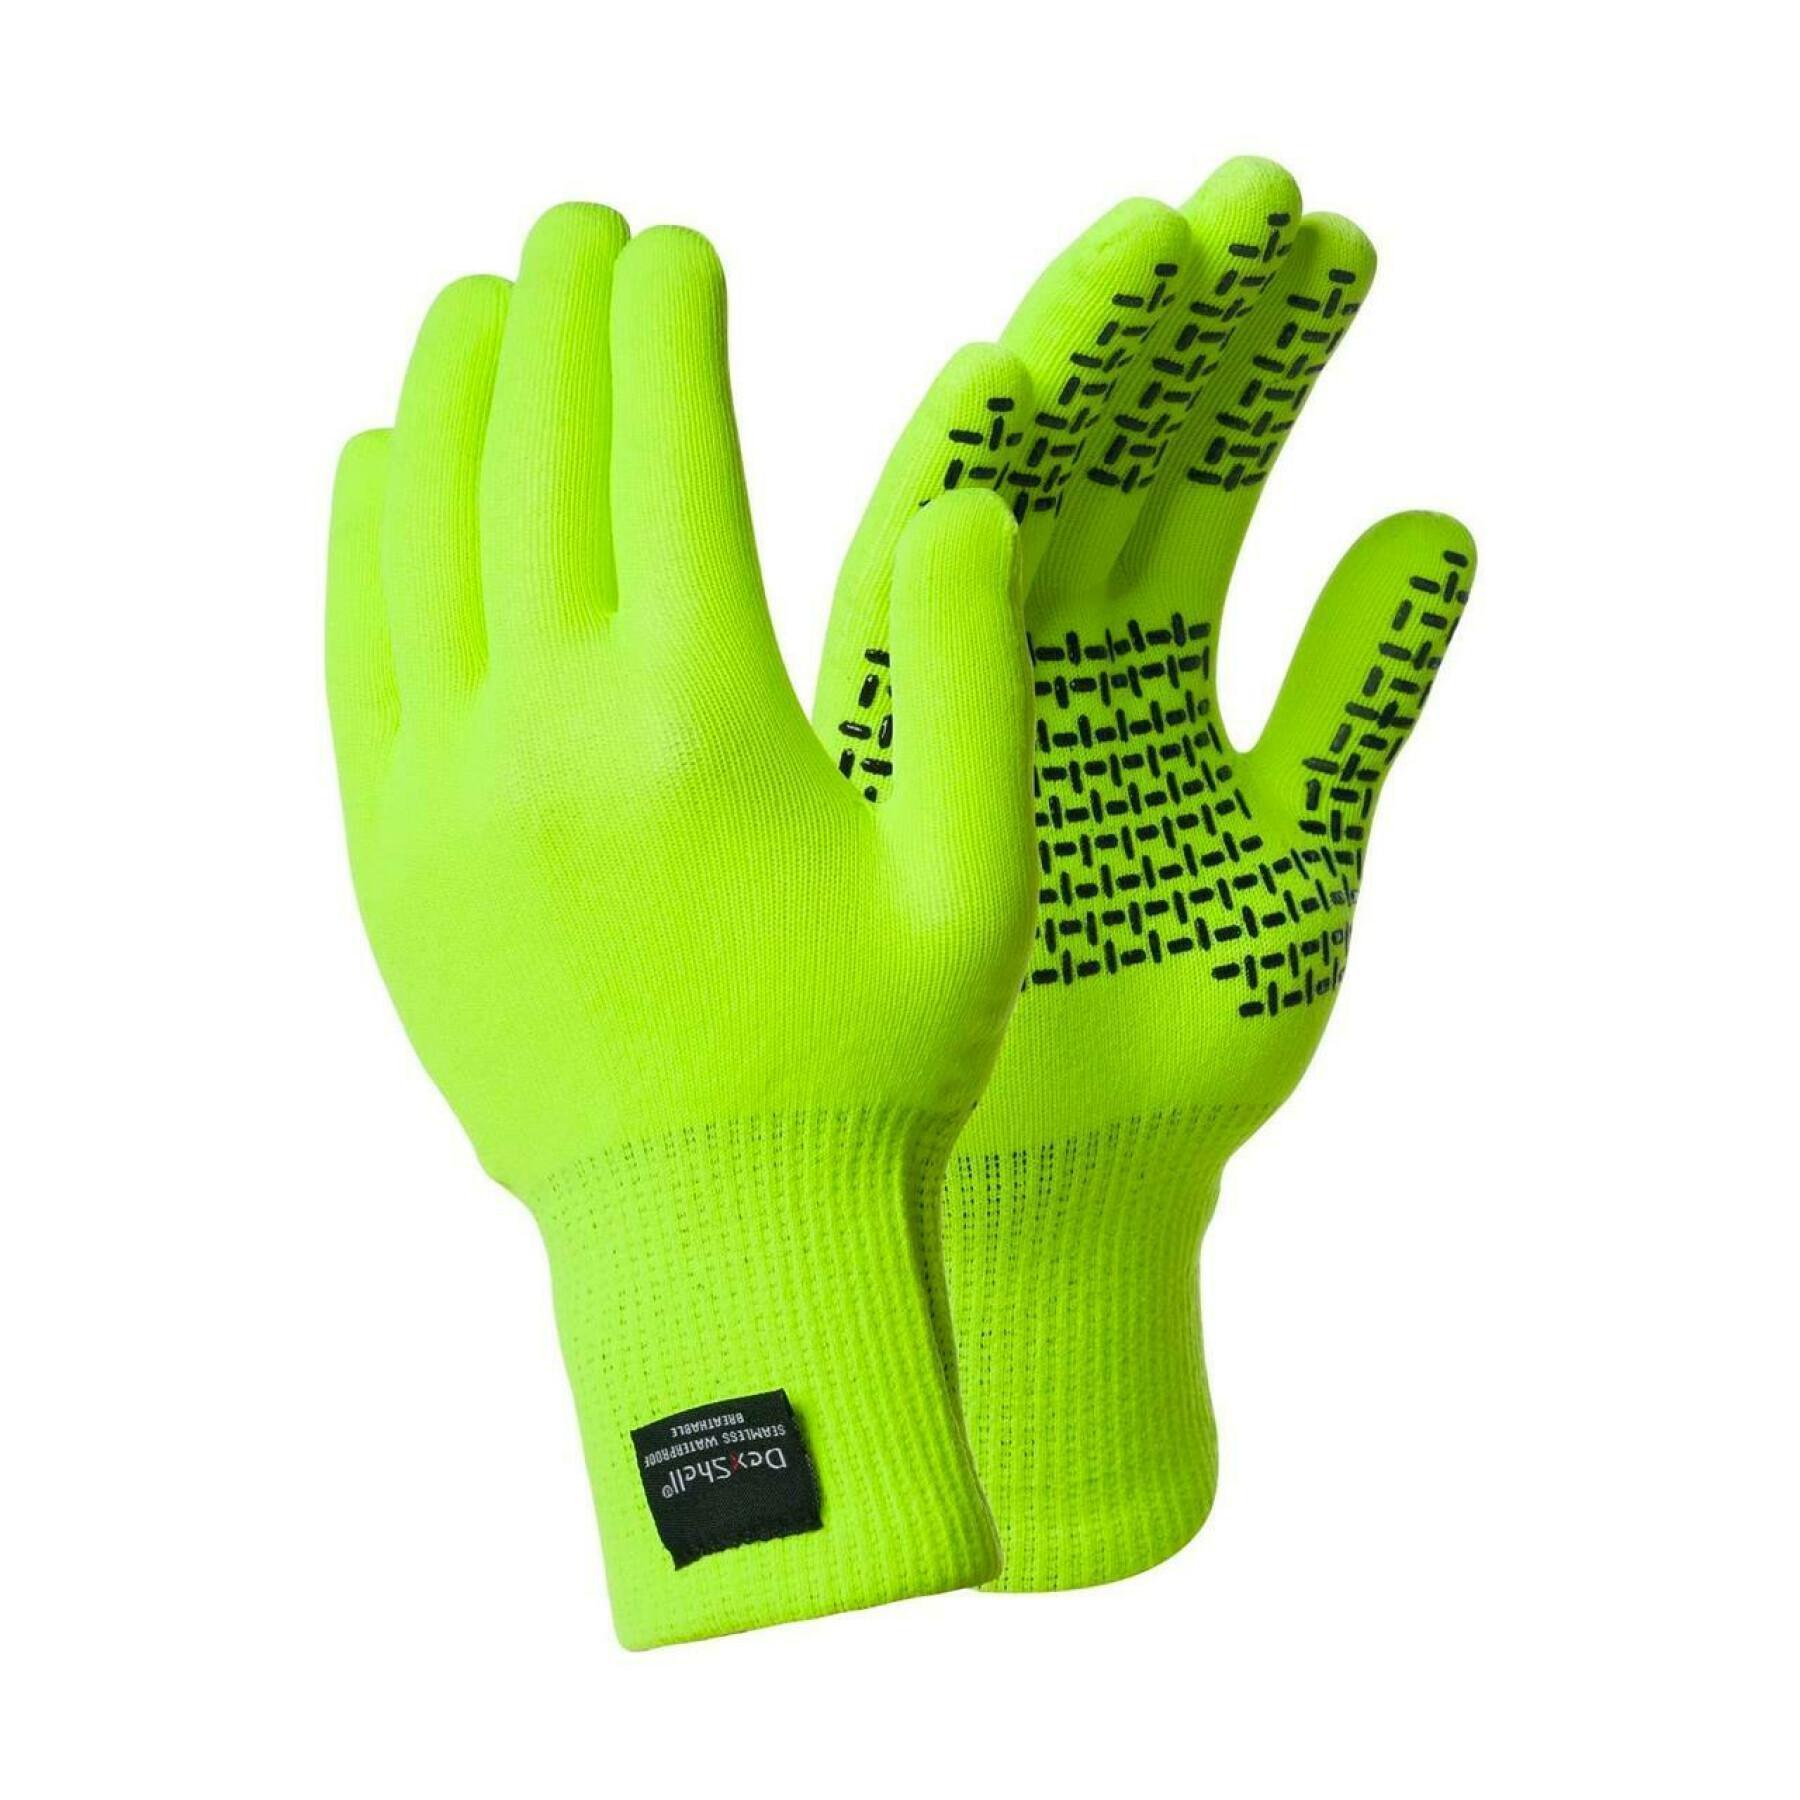 Handschuhe Dexshell touchfit jaune haute visibilité